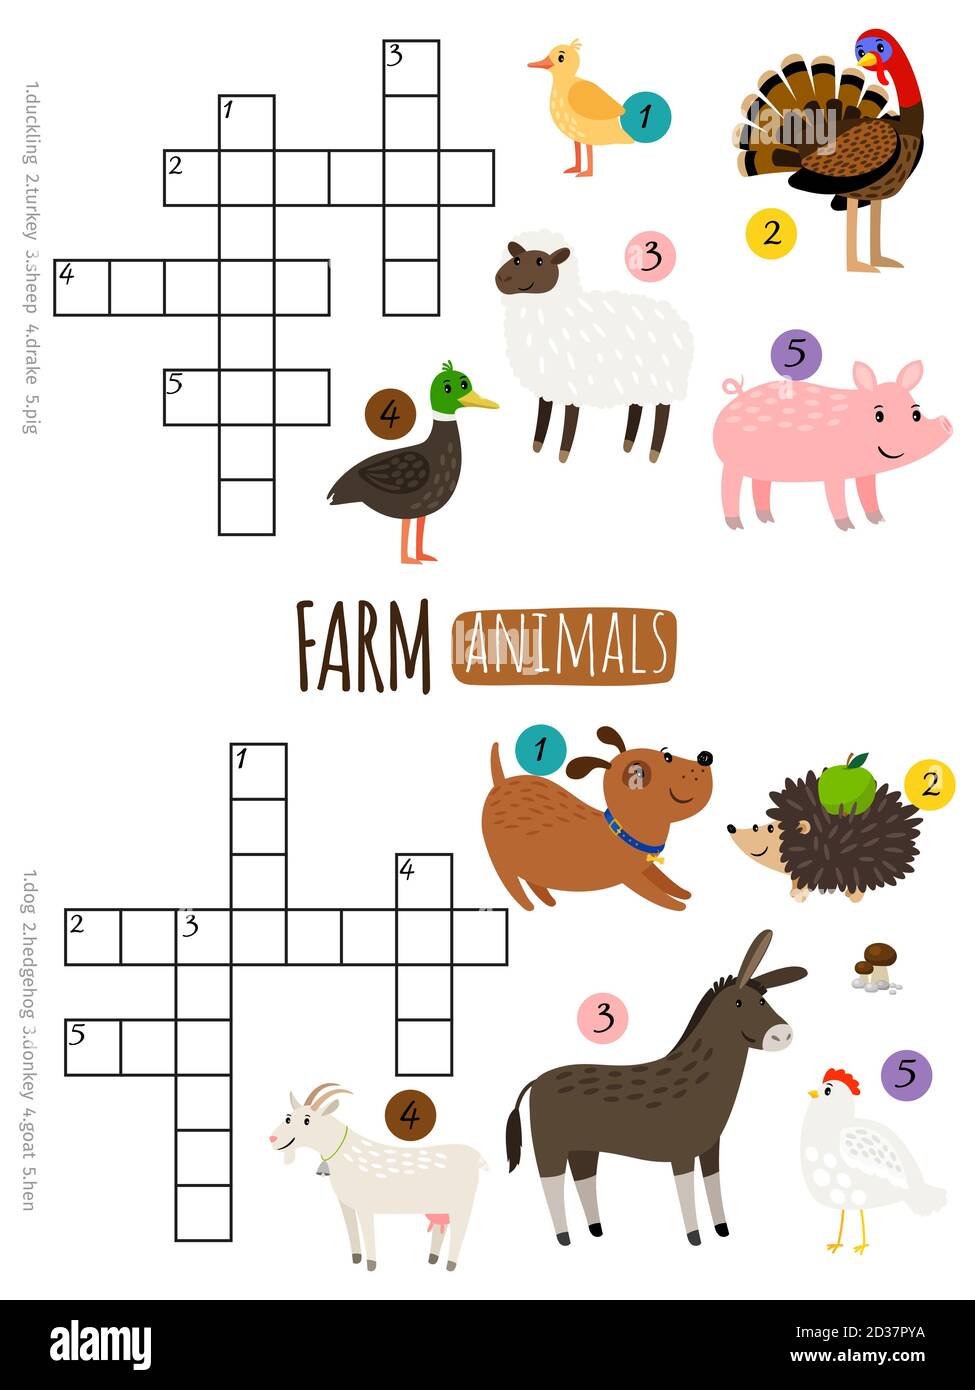 Farm animals mini crosswords for little kids vector illustration Stock Vector